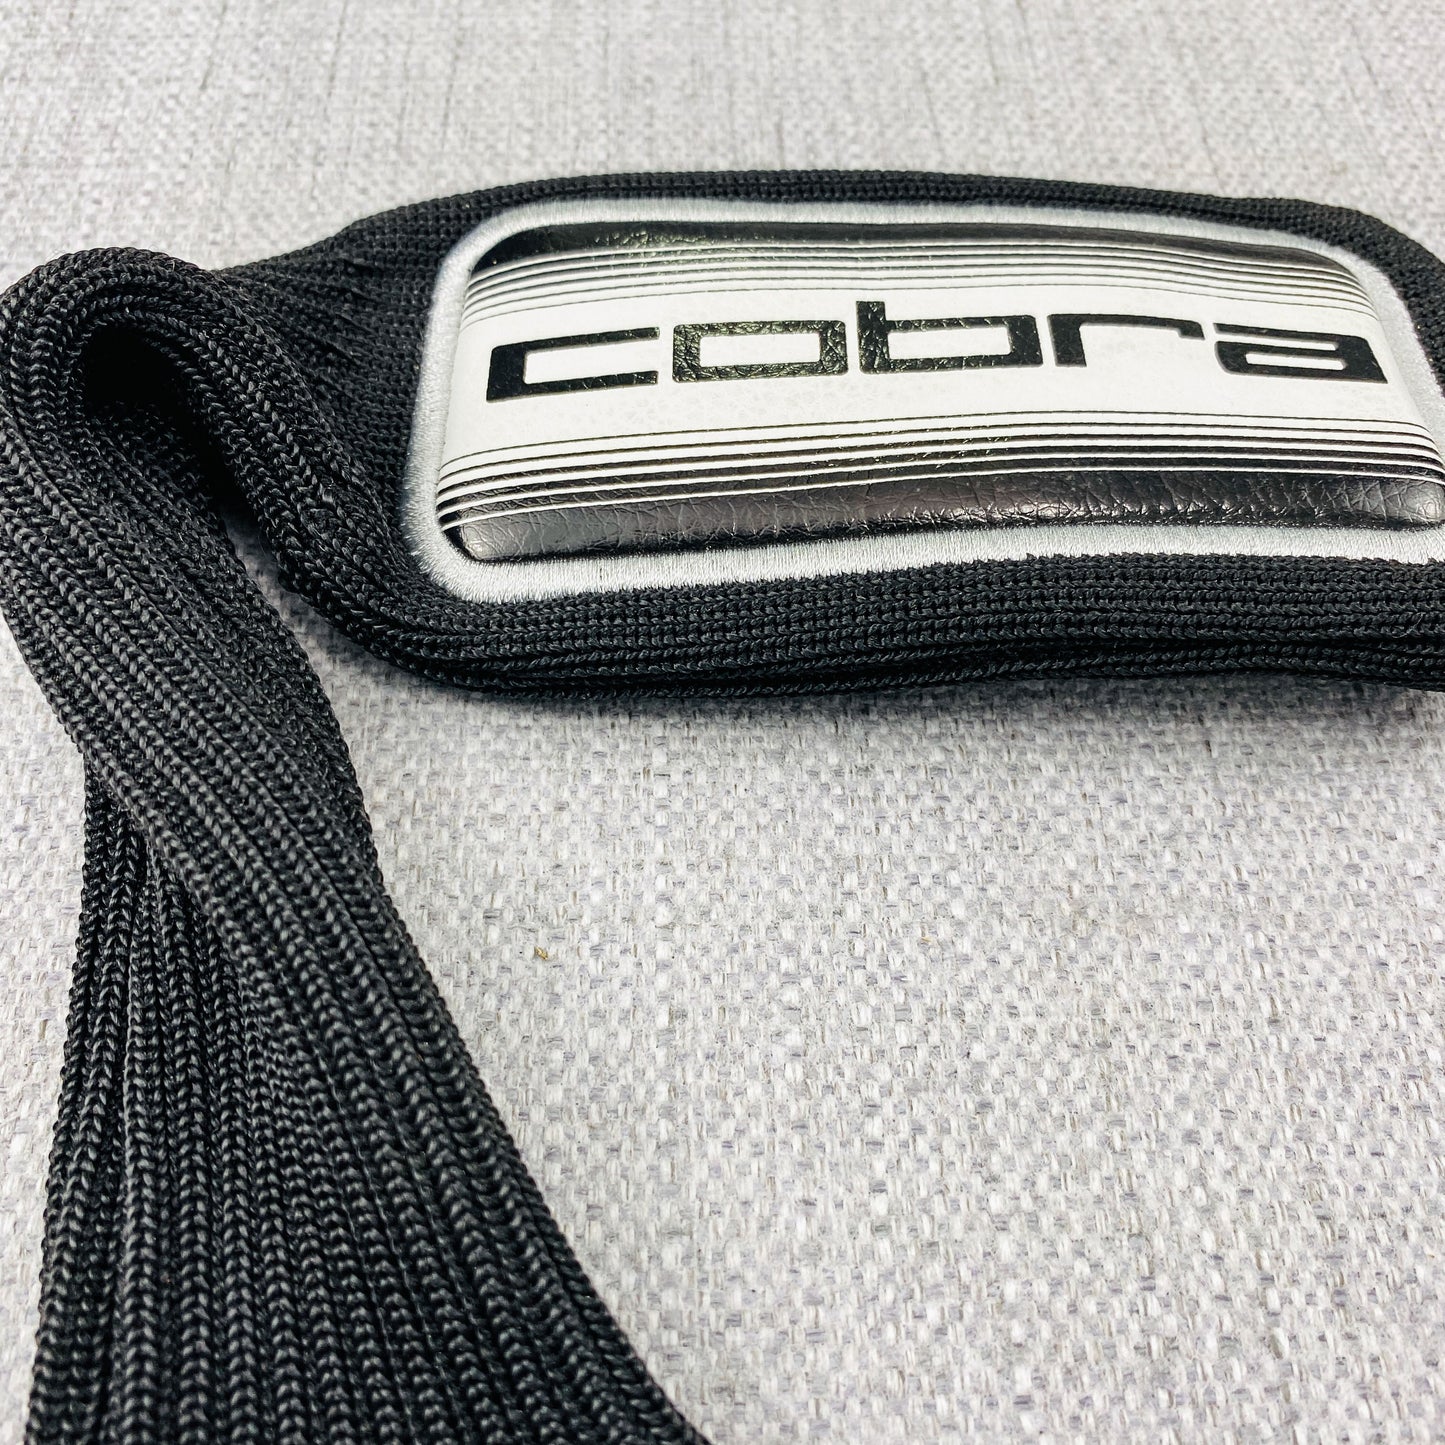 Cobra Hybrid Head-Cover. As New